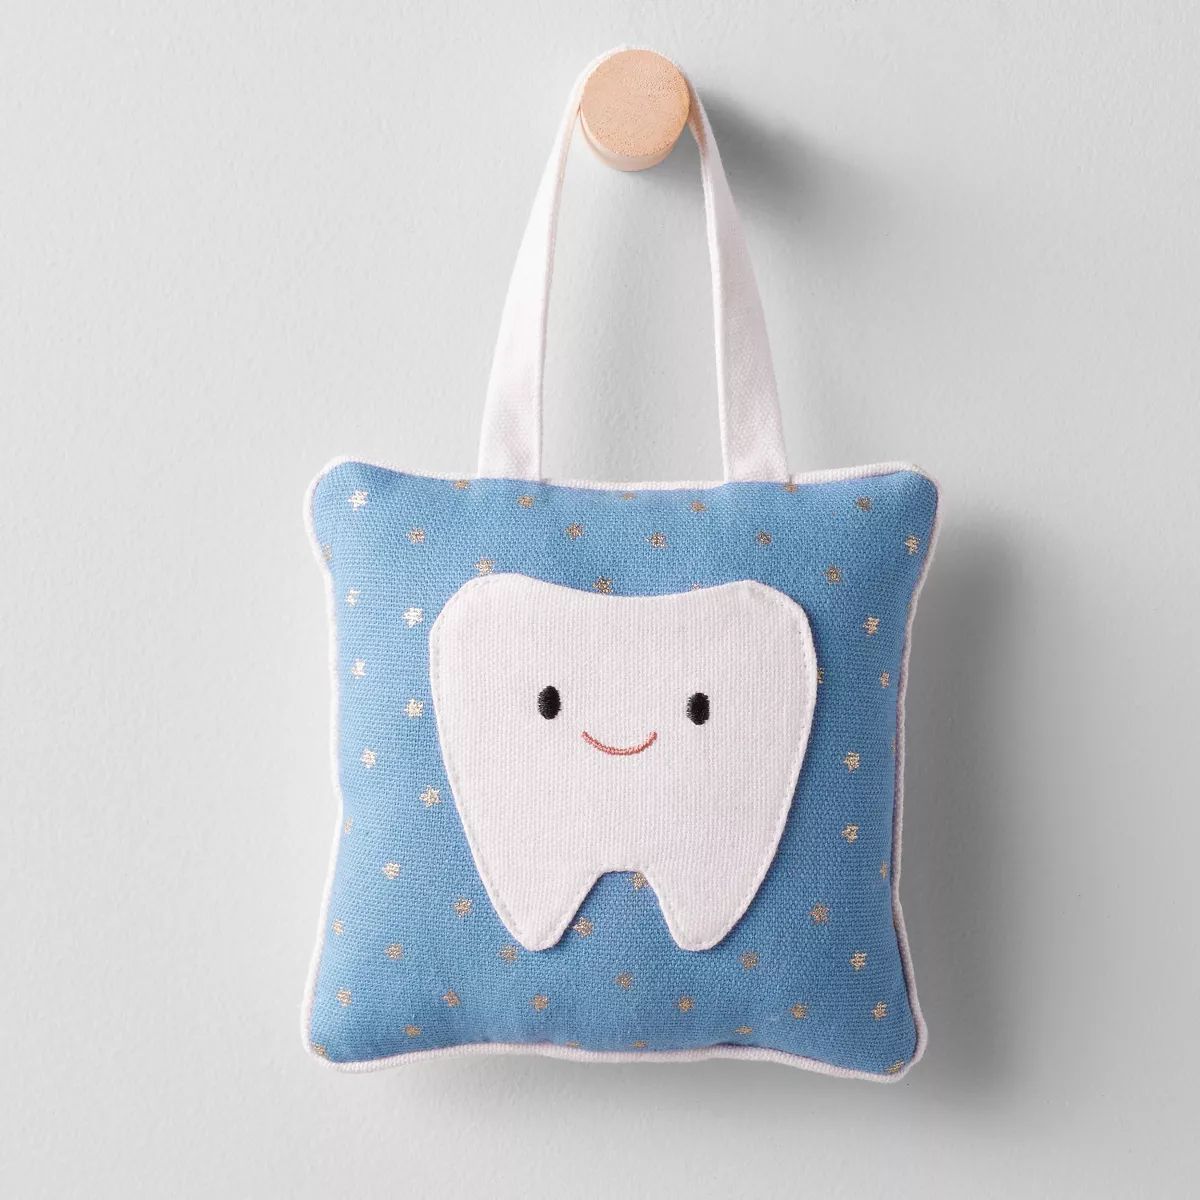 Kids' Tooth Fairy ids' Pillow Blue - Pillowfort™ | Target